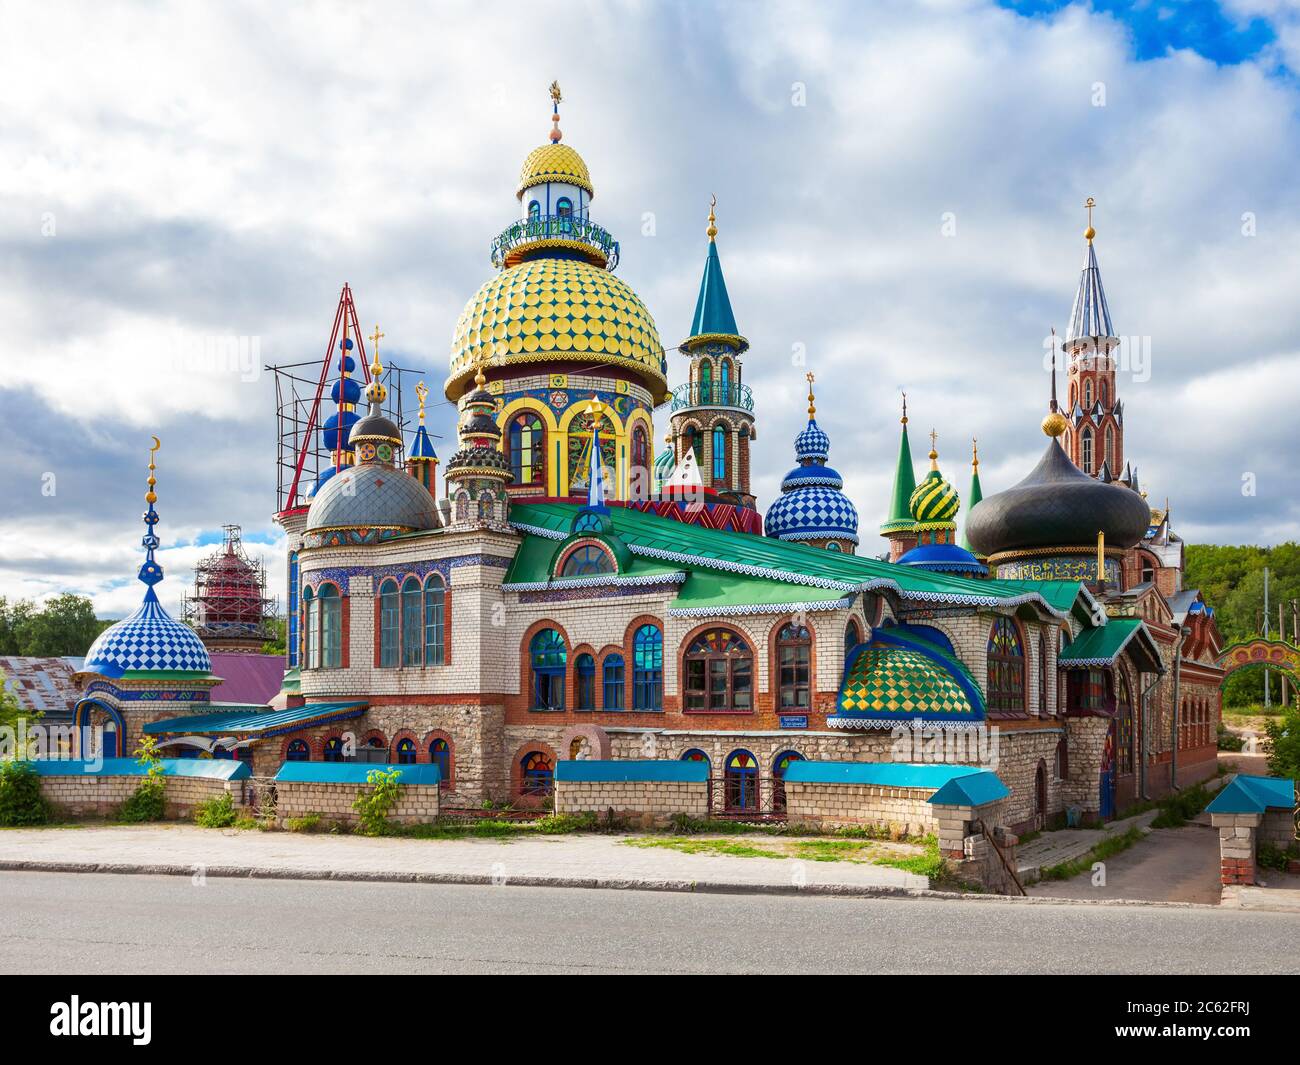 Le Temple de toutes les religions ou le Temple universel est un complexe architectural dans le Arakchino Staroye Microdistrict de Kazan, Russie. Banque D'Images